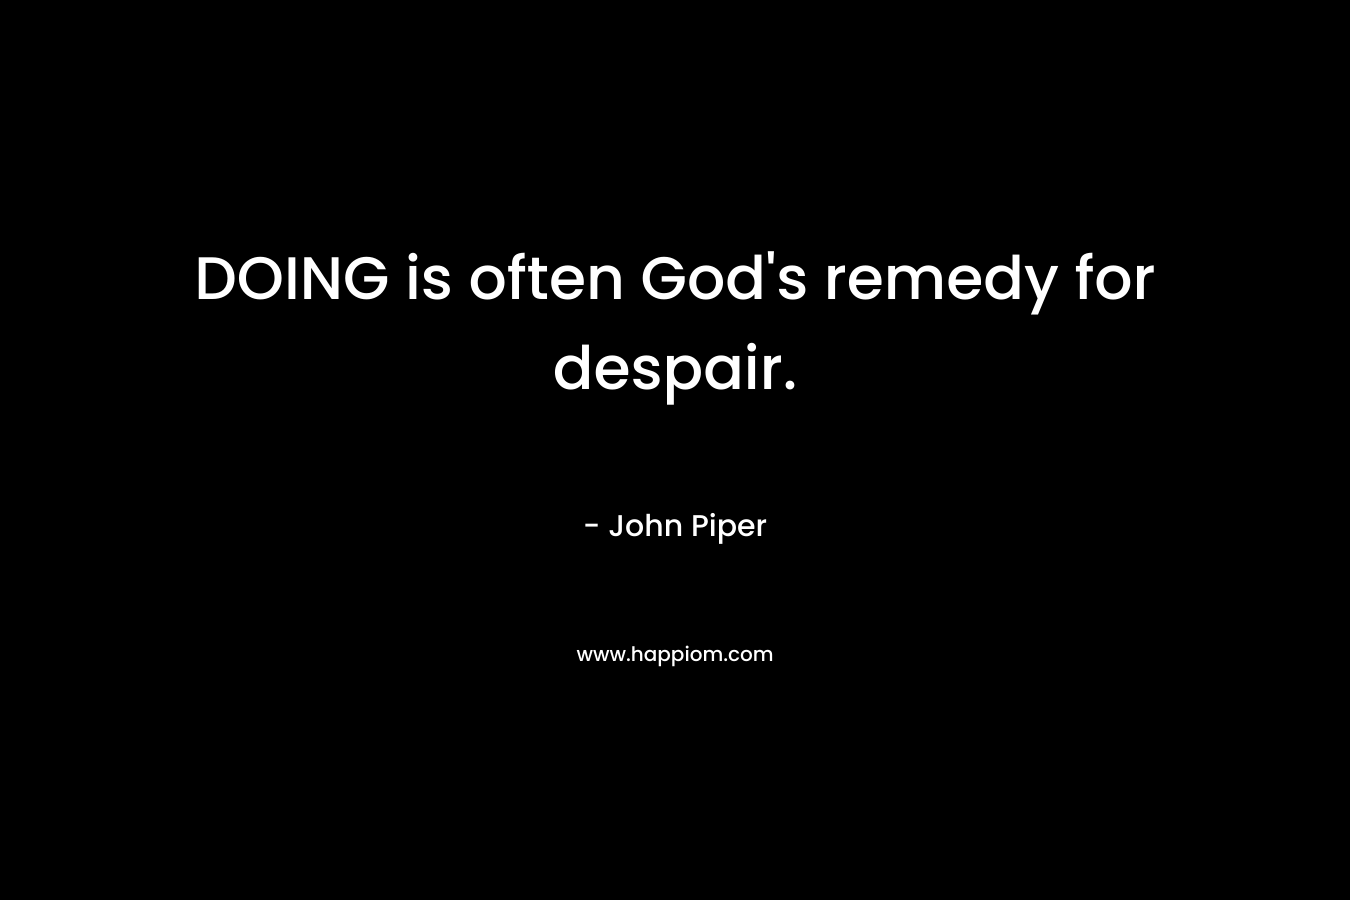 DOING is often God's remedy for despair.